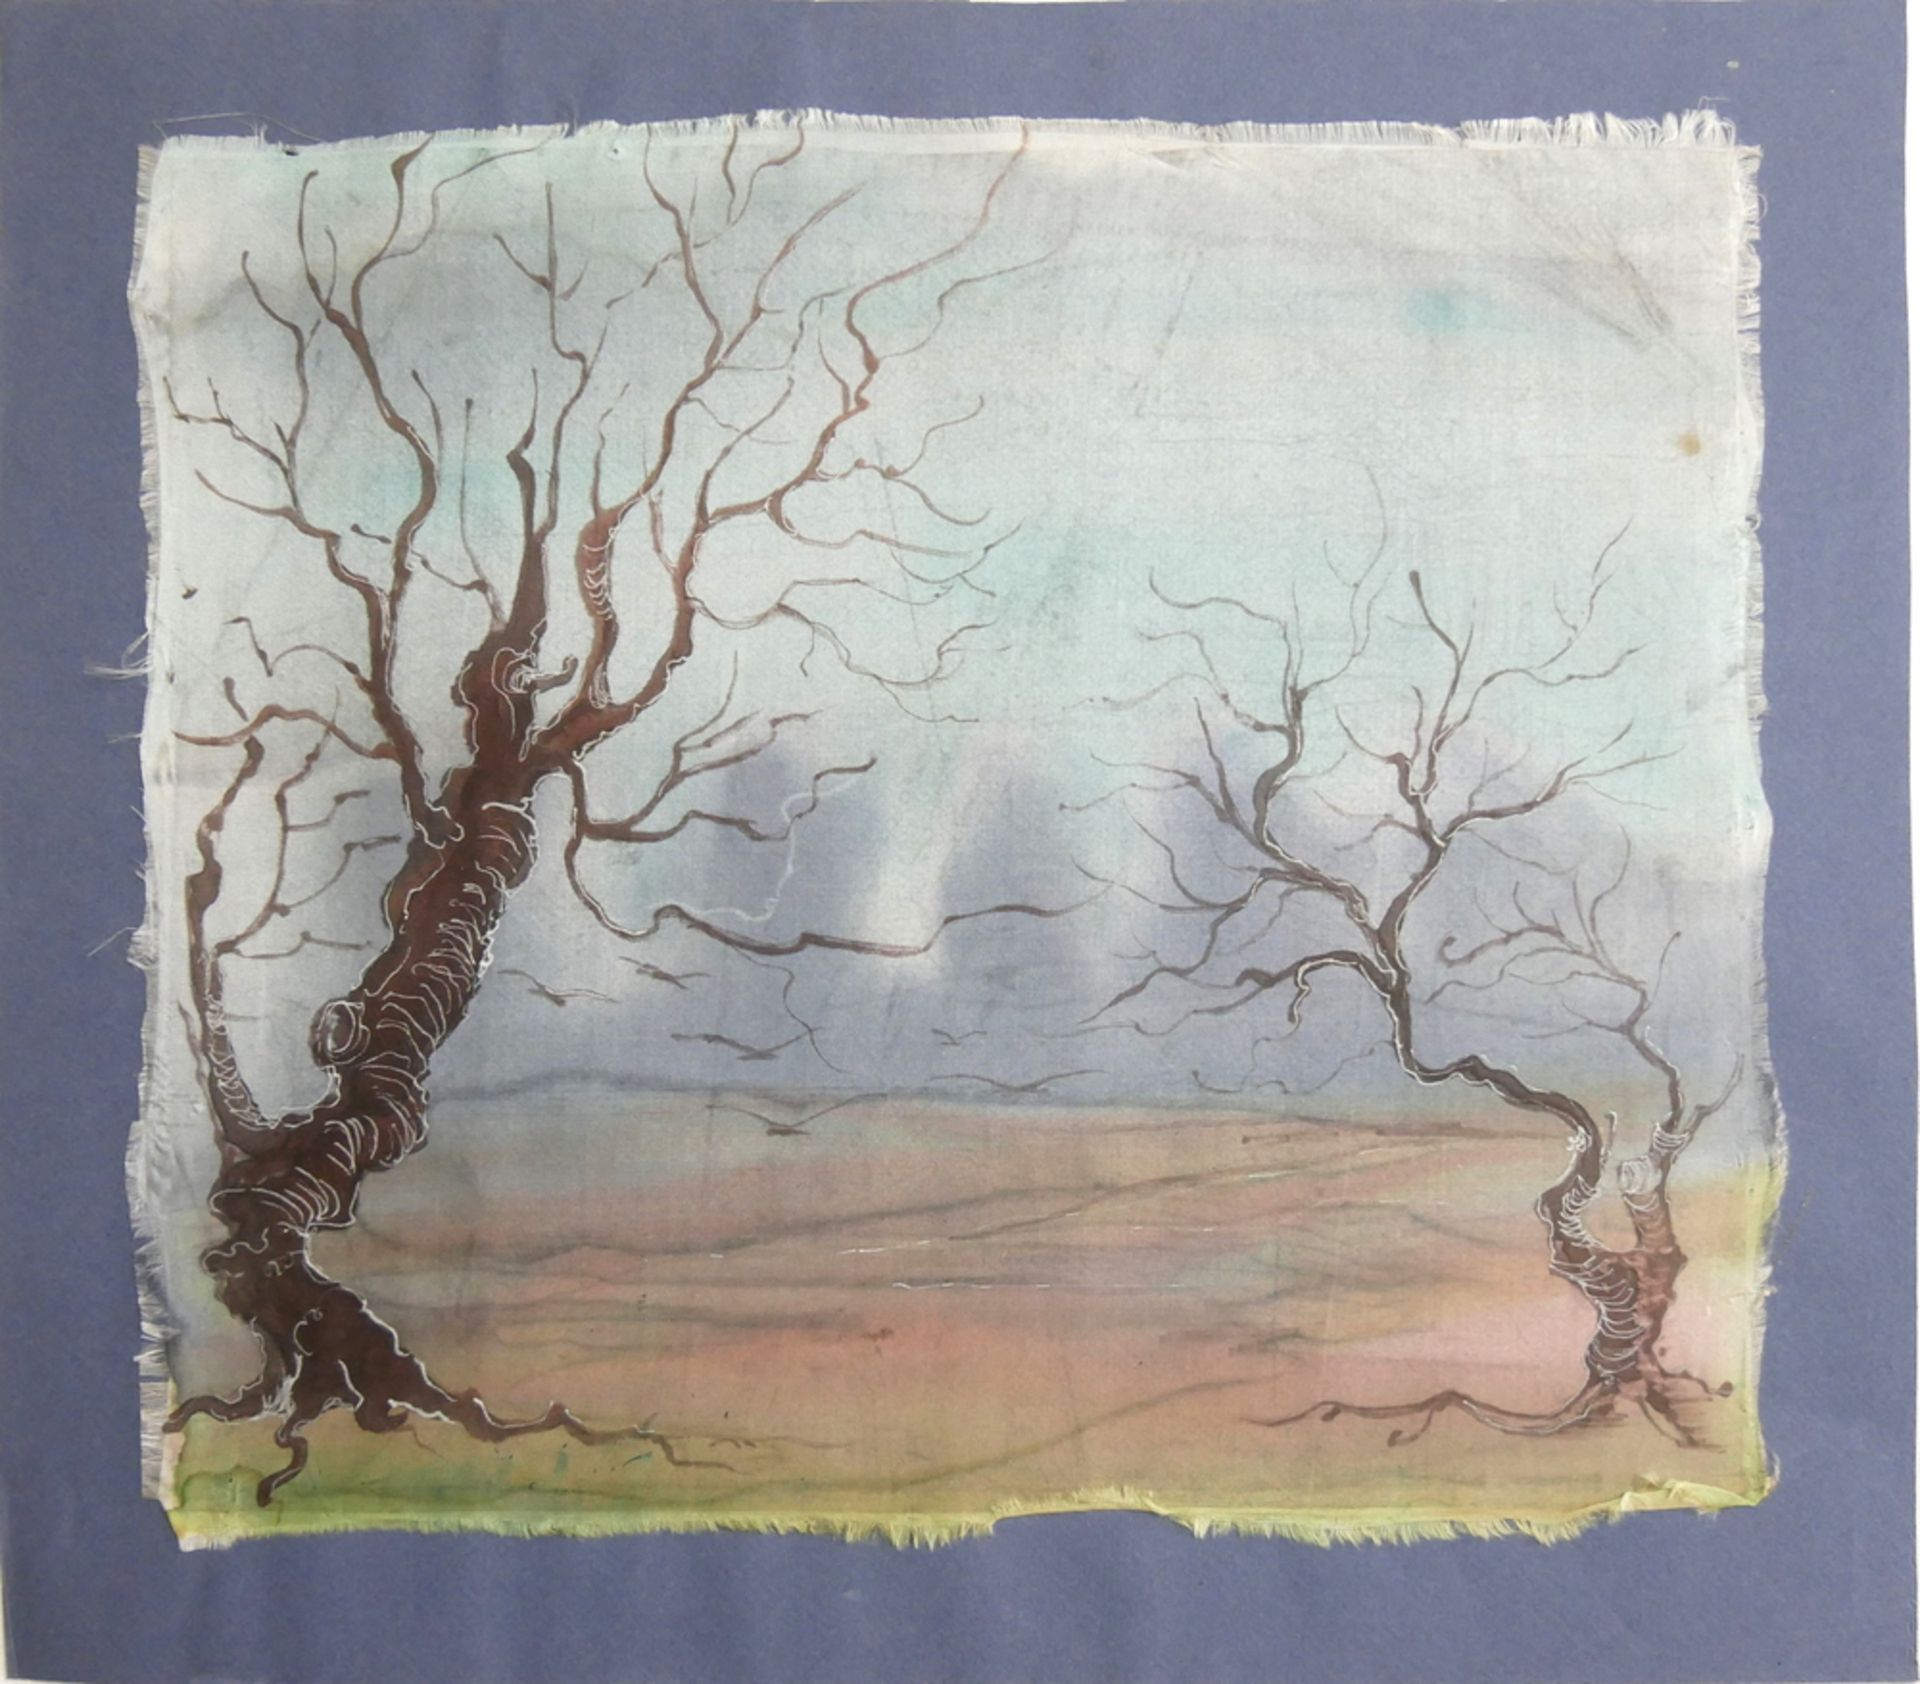 Seidenmalerei "2 Bäume", unbekannter Künstler, ohne Signatur, Maße (komplett): Breite ca. 46 cm